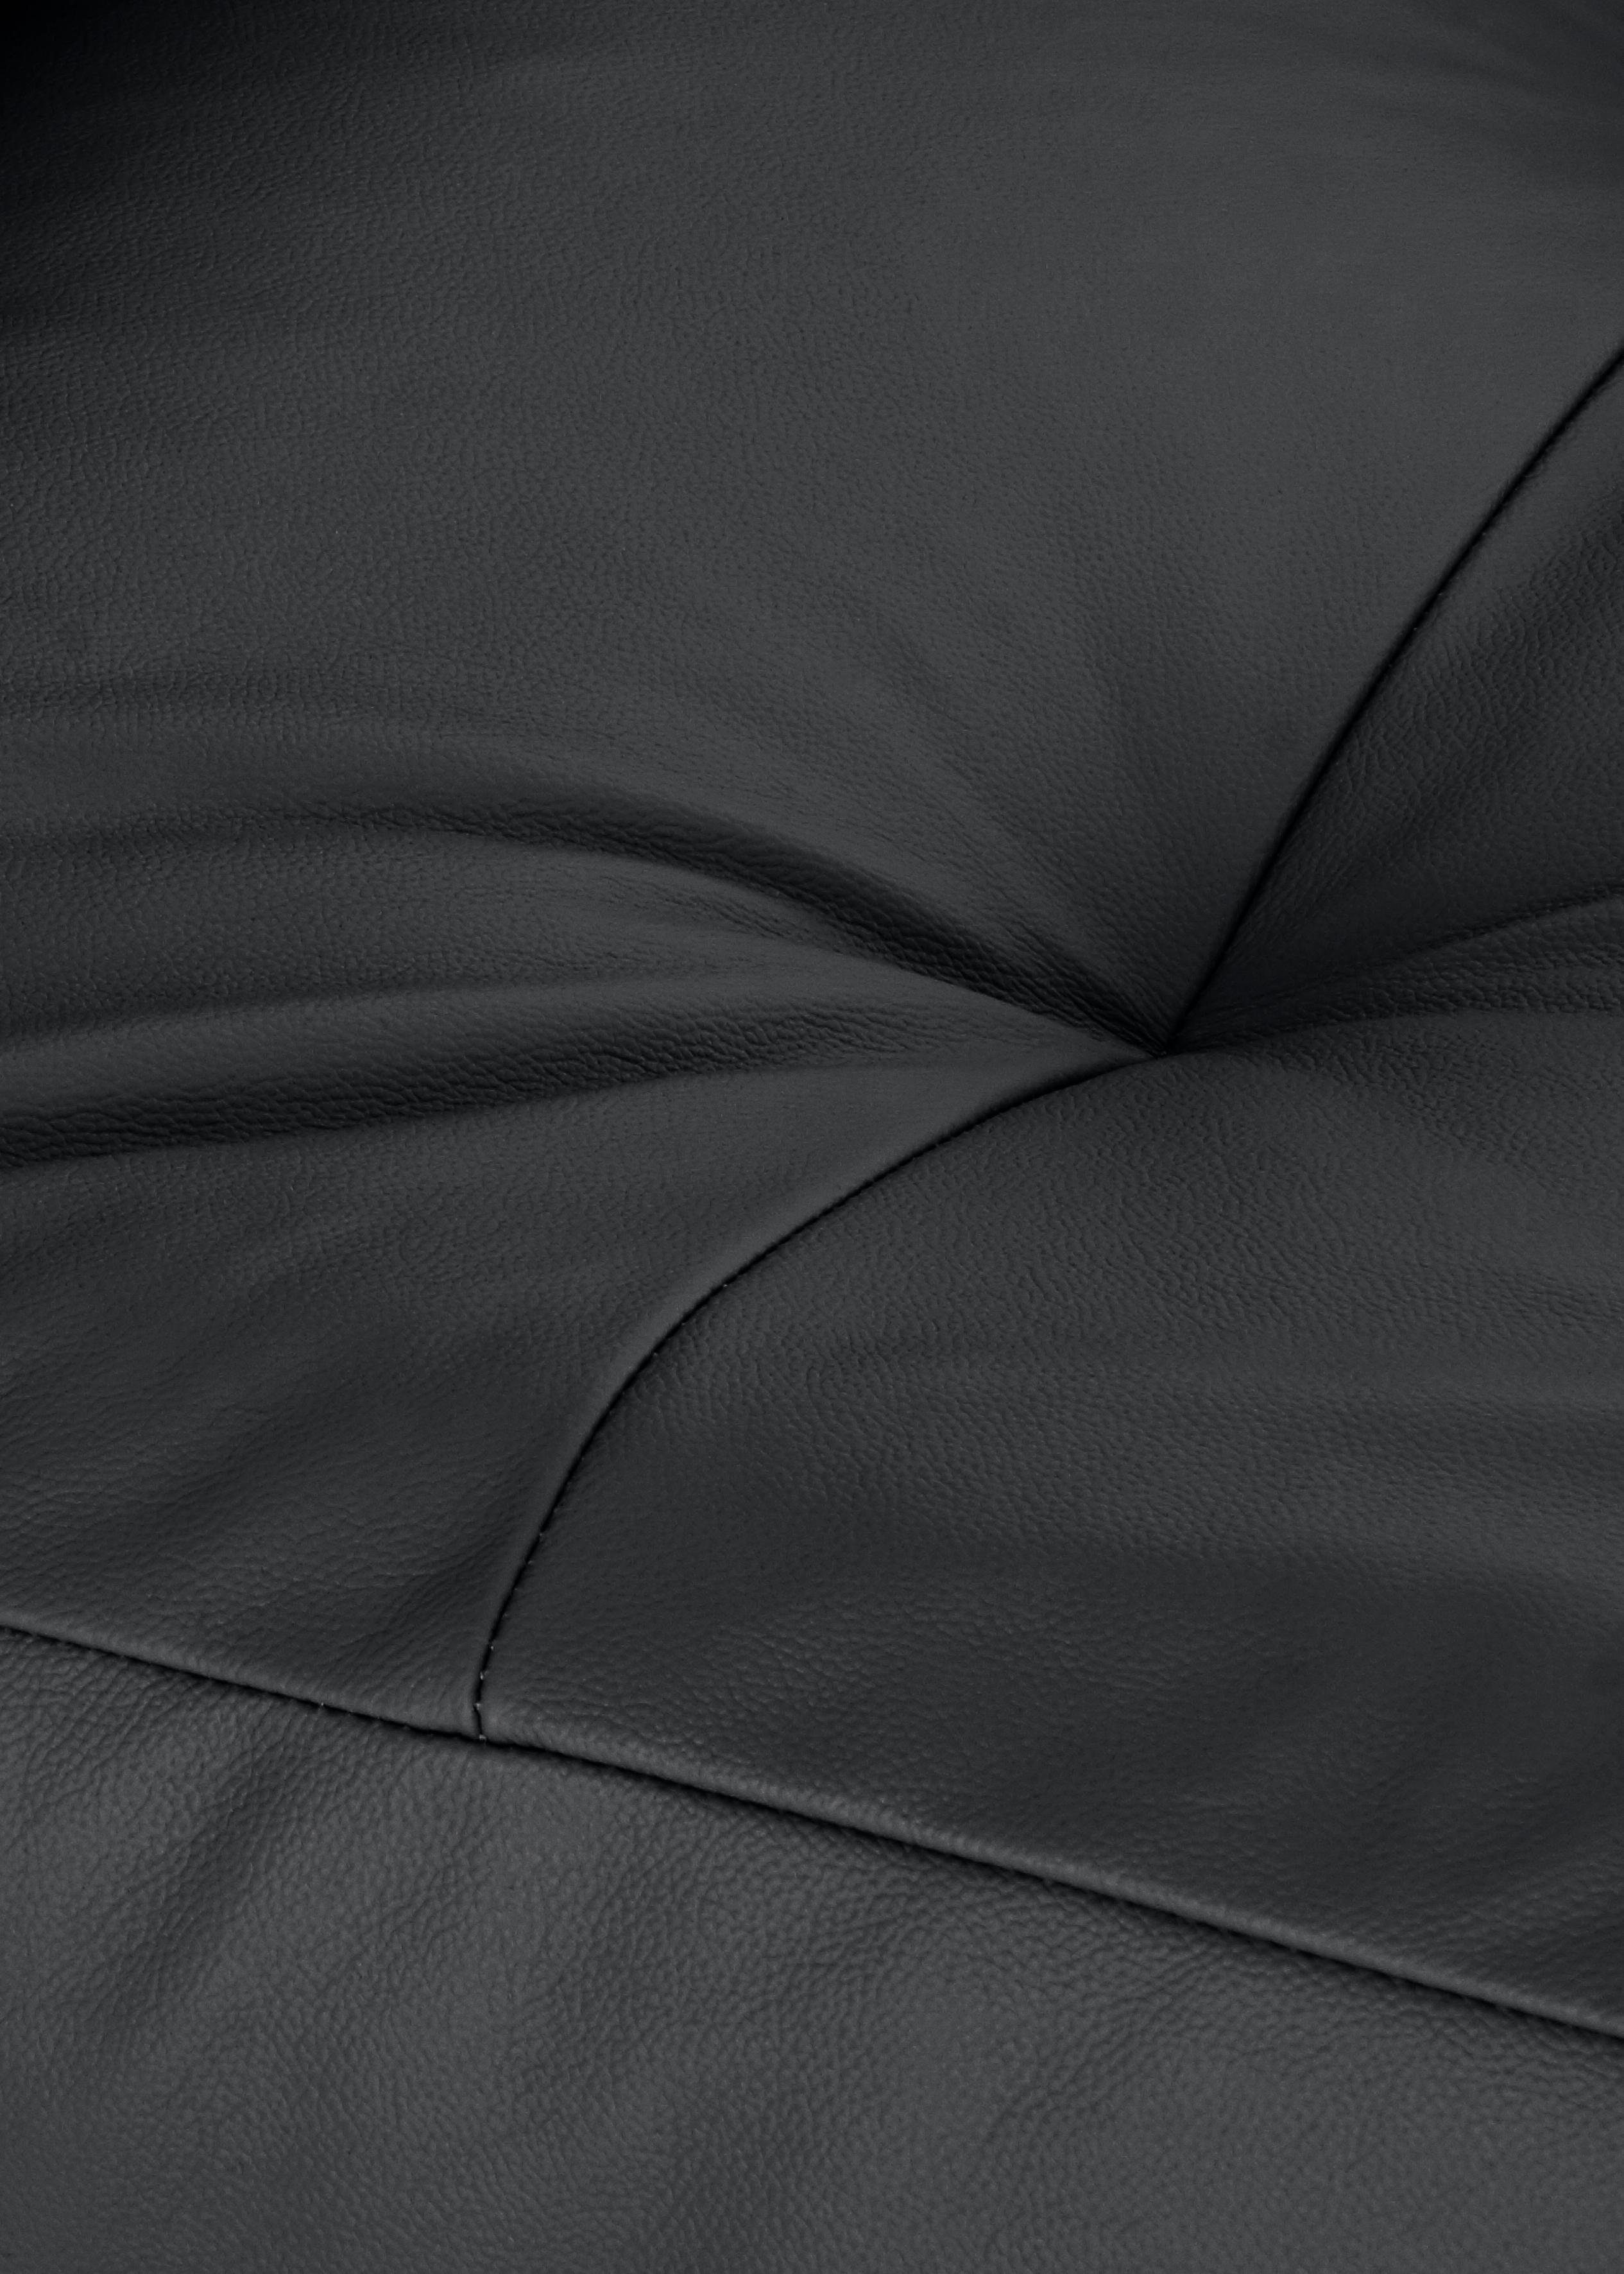 W.SCHILLIG softy, dekorativer Sitz, schwarz Chaiselongue pulverbeschichtet mit Füße im Heftung